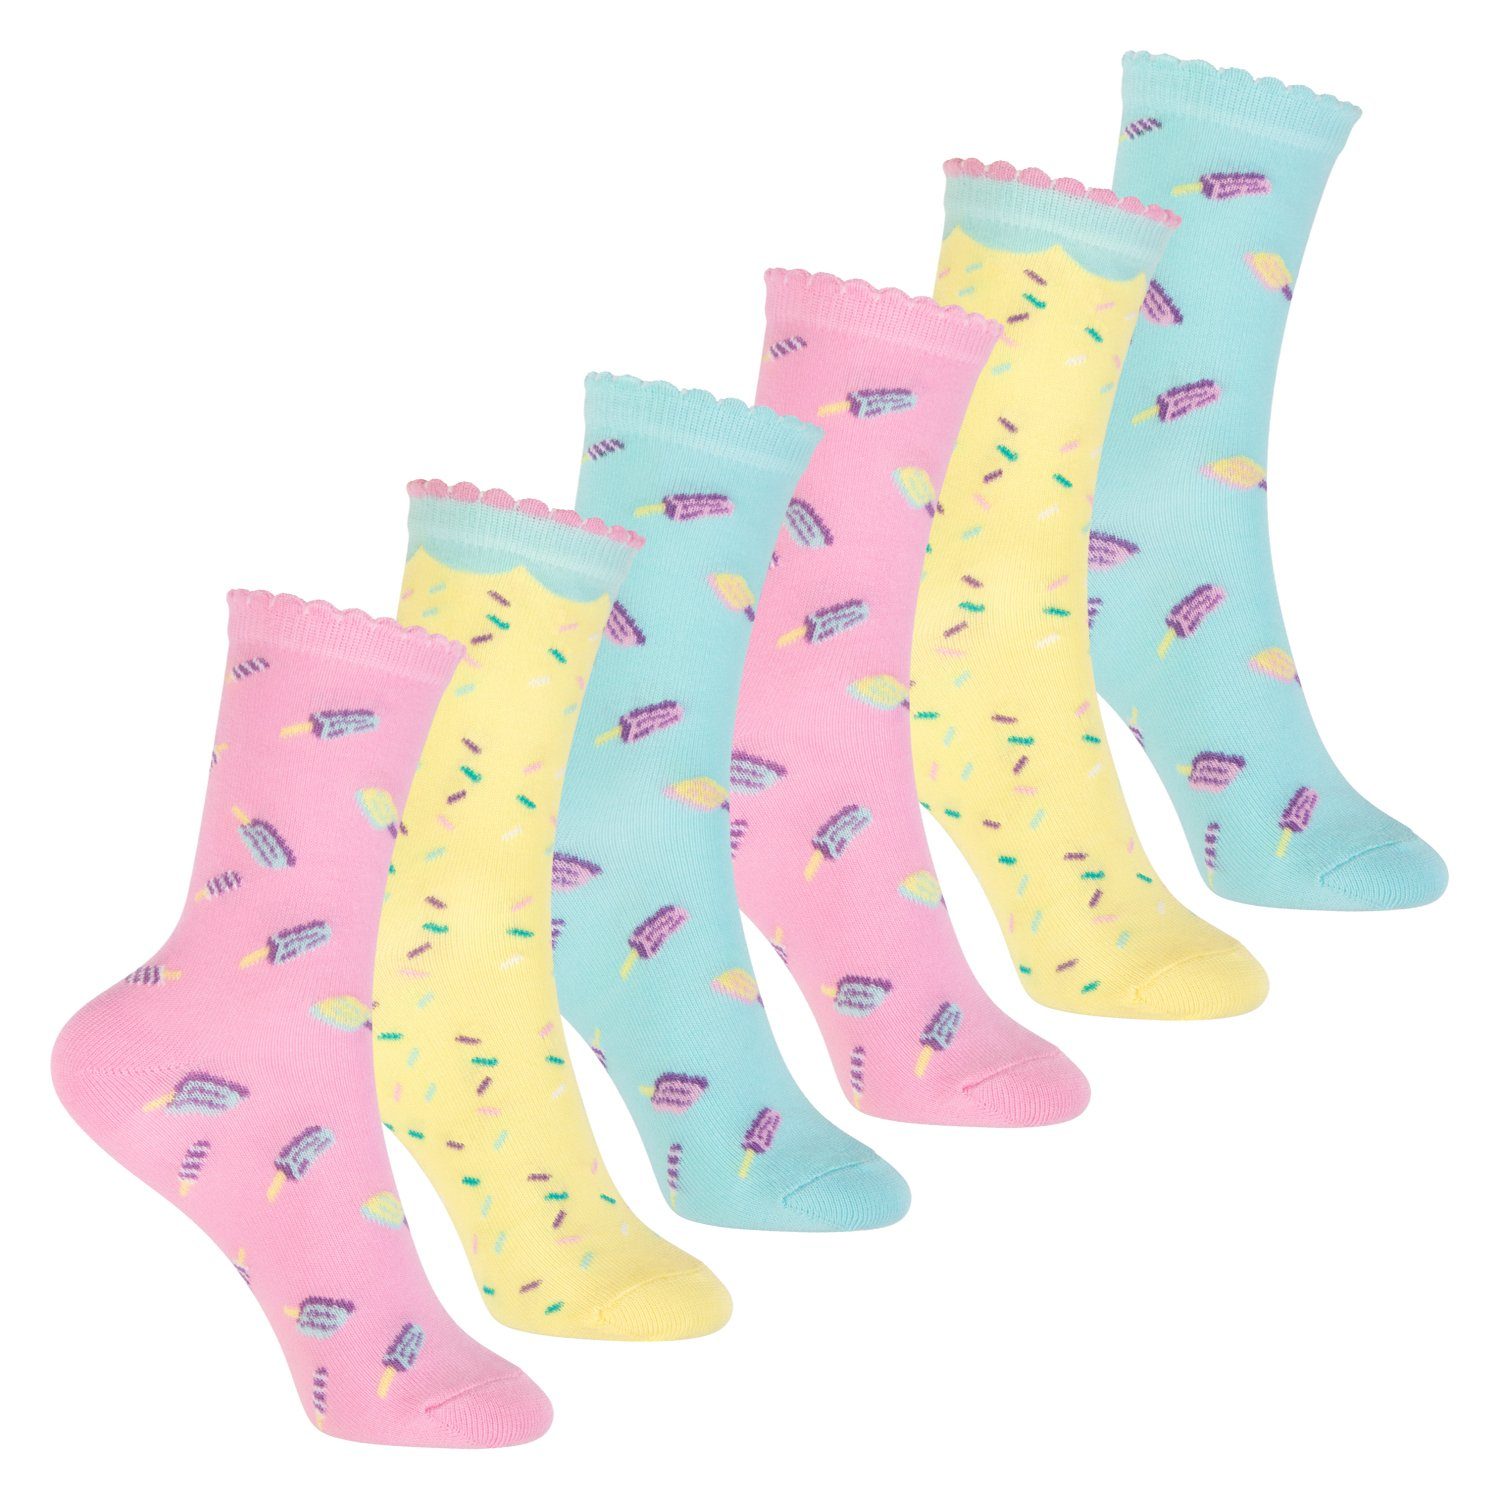 Aqua Socken online kaufen | OTTO